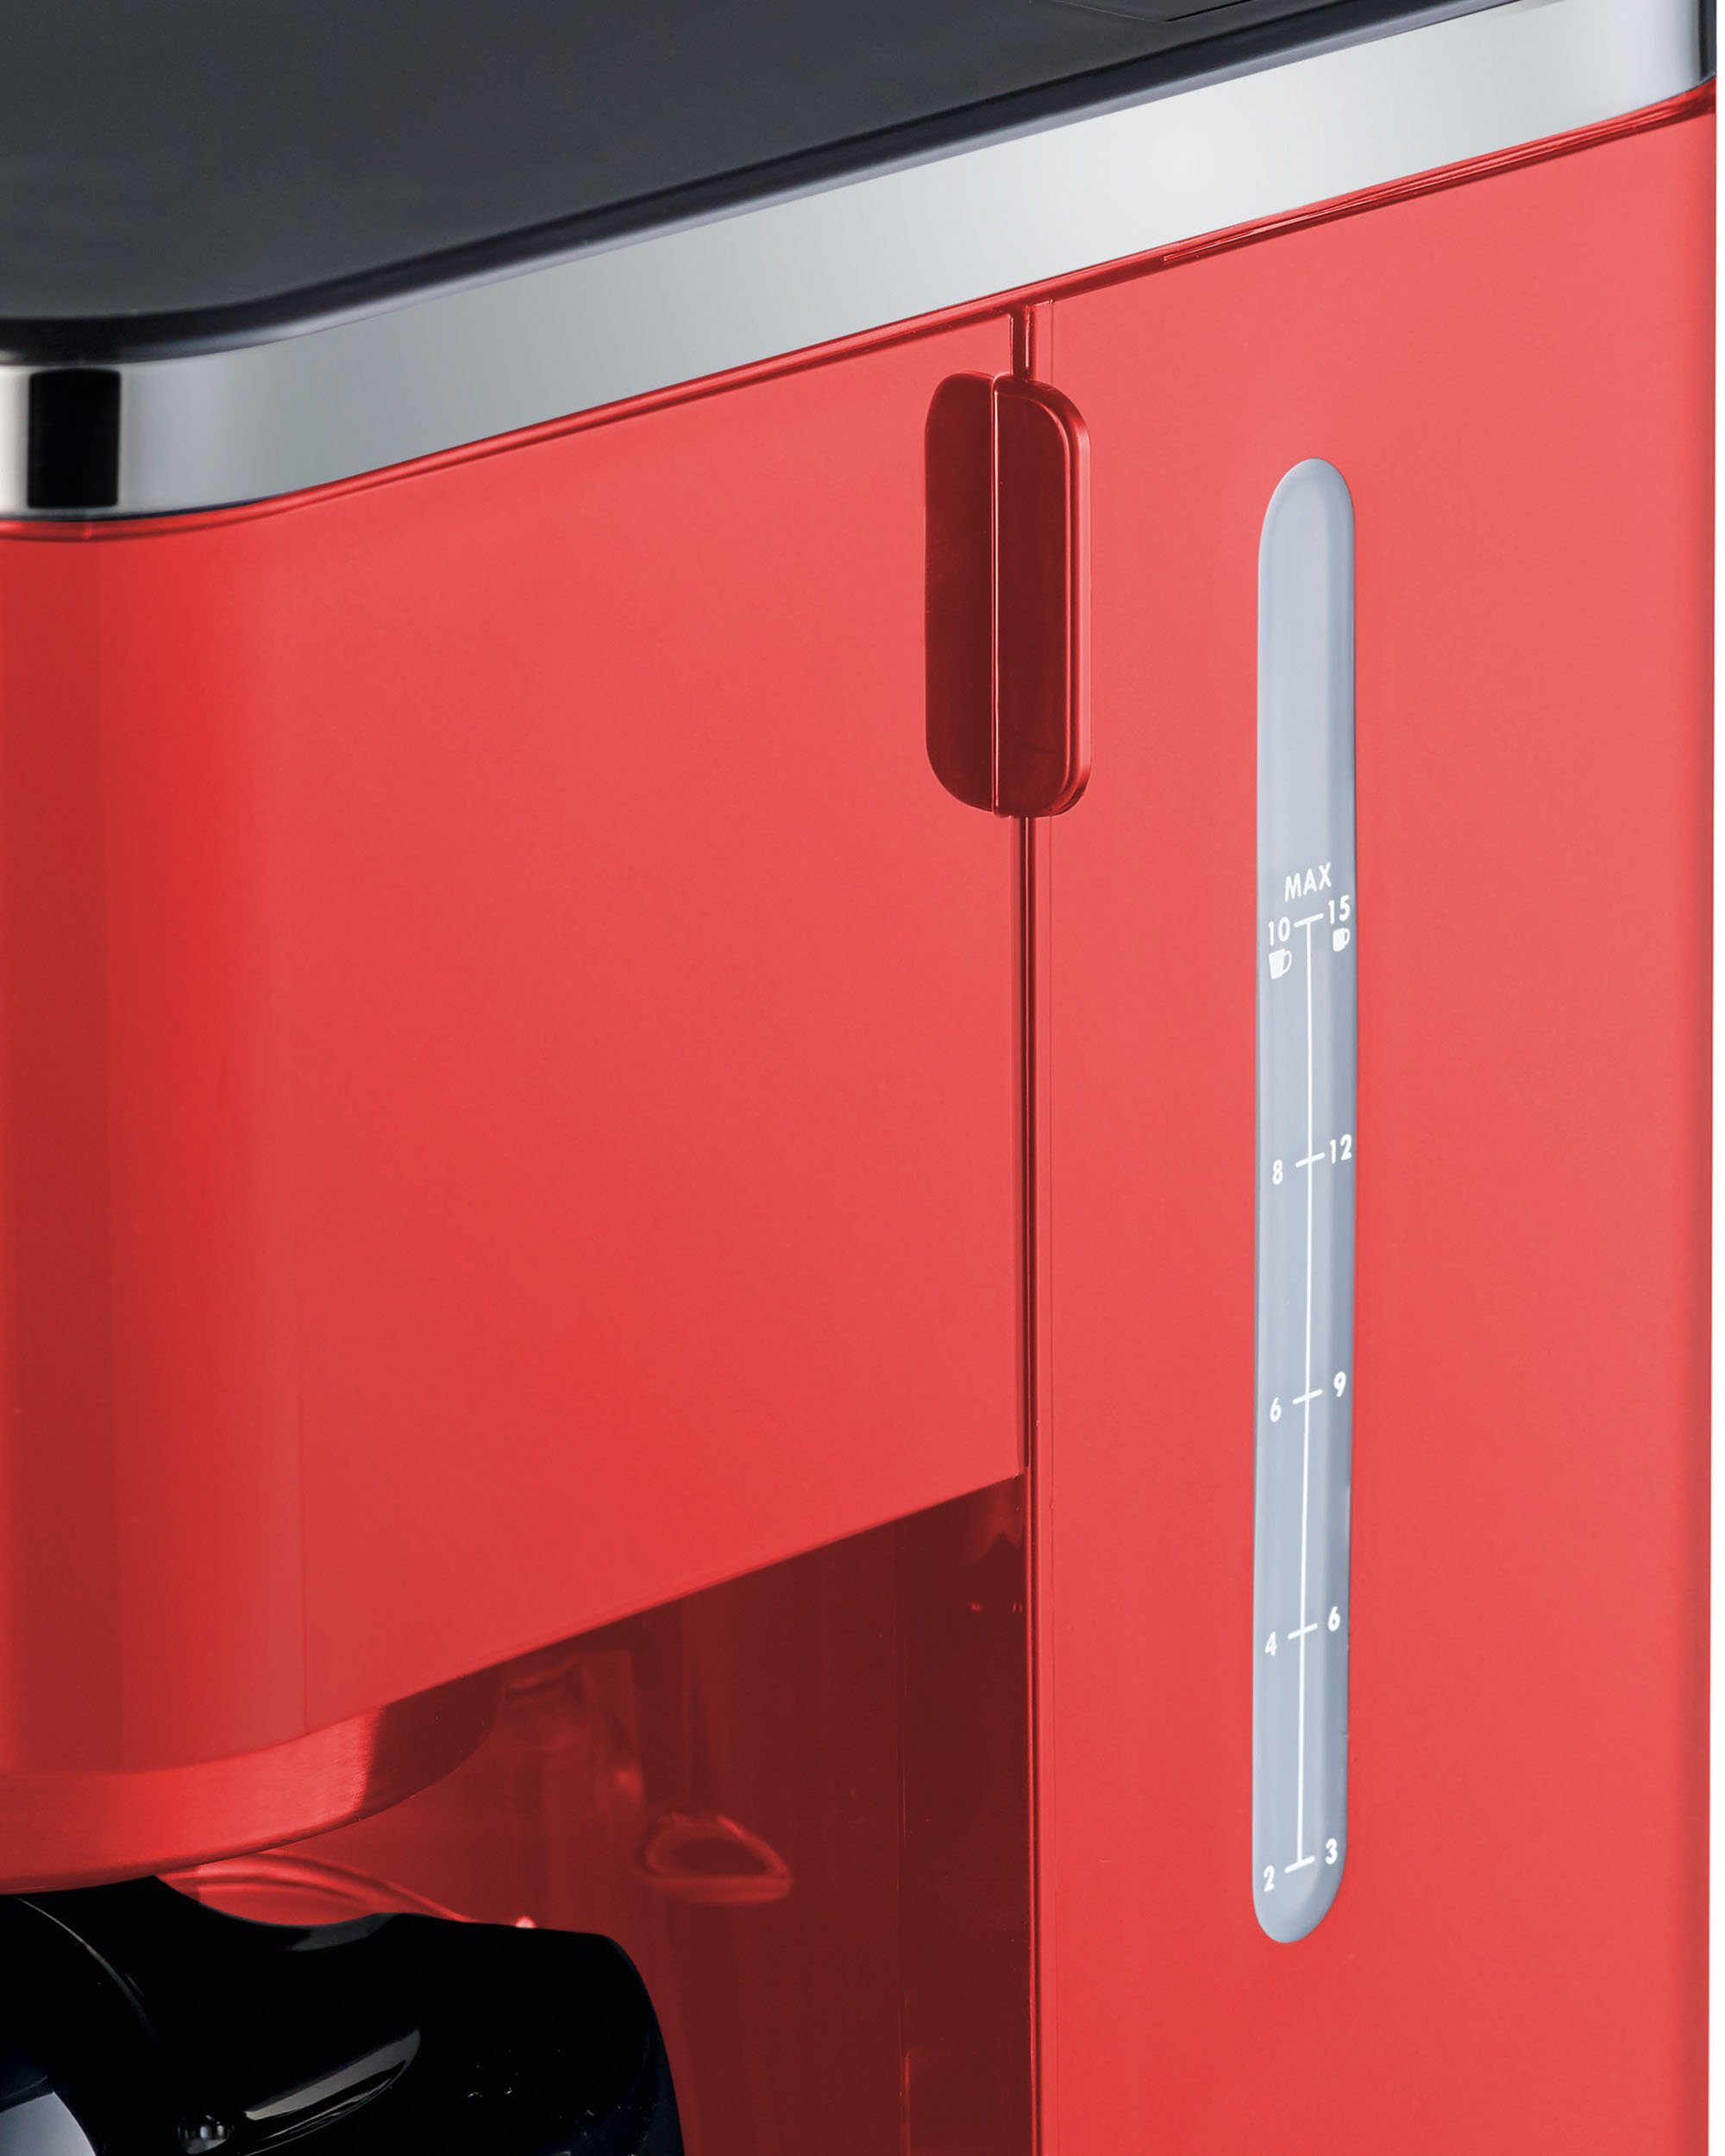 Graef Filterkaffeemaschine FK 403, 1x4, 1,25l Kaffeekanne, rot Papierfilter mit Glaskanne